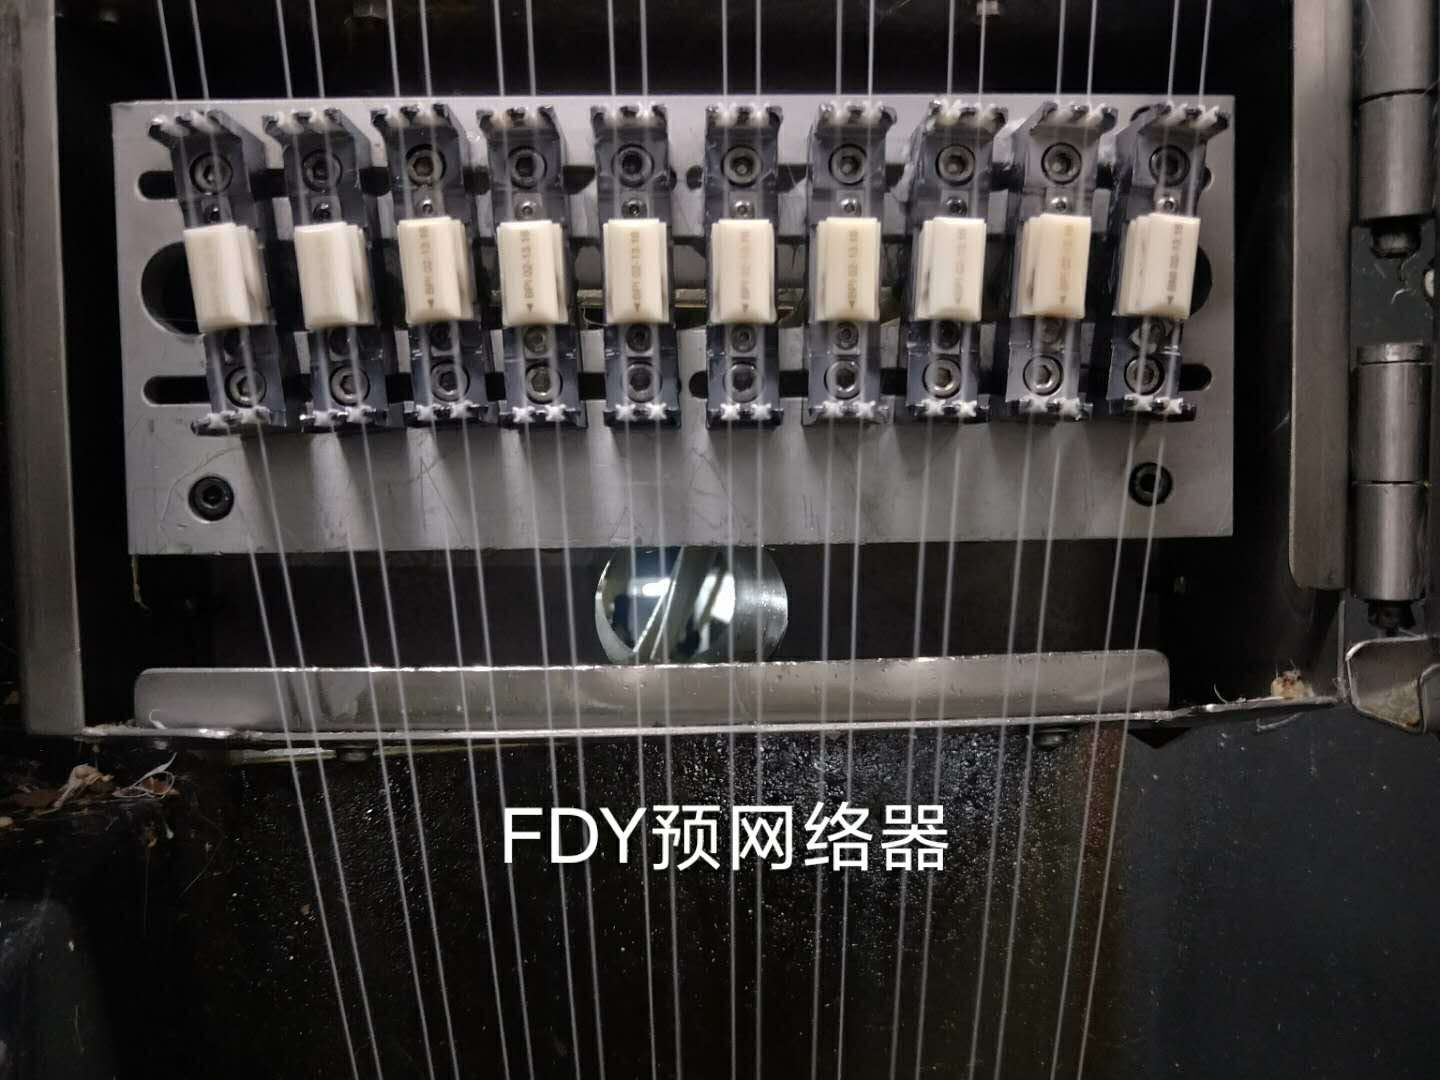 FDY-Maschine